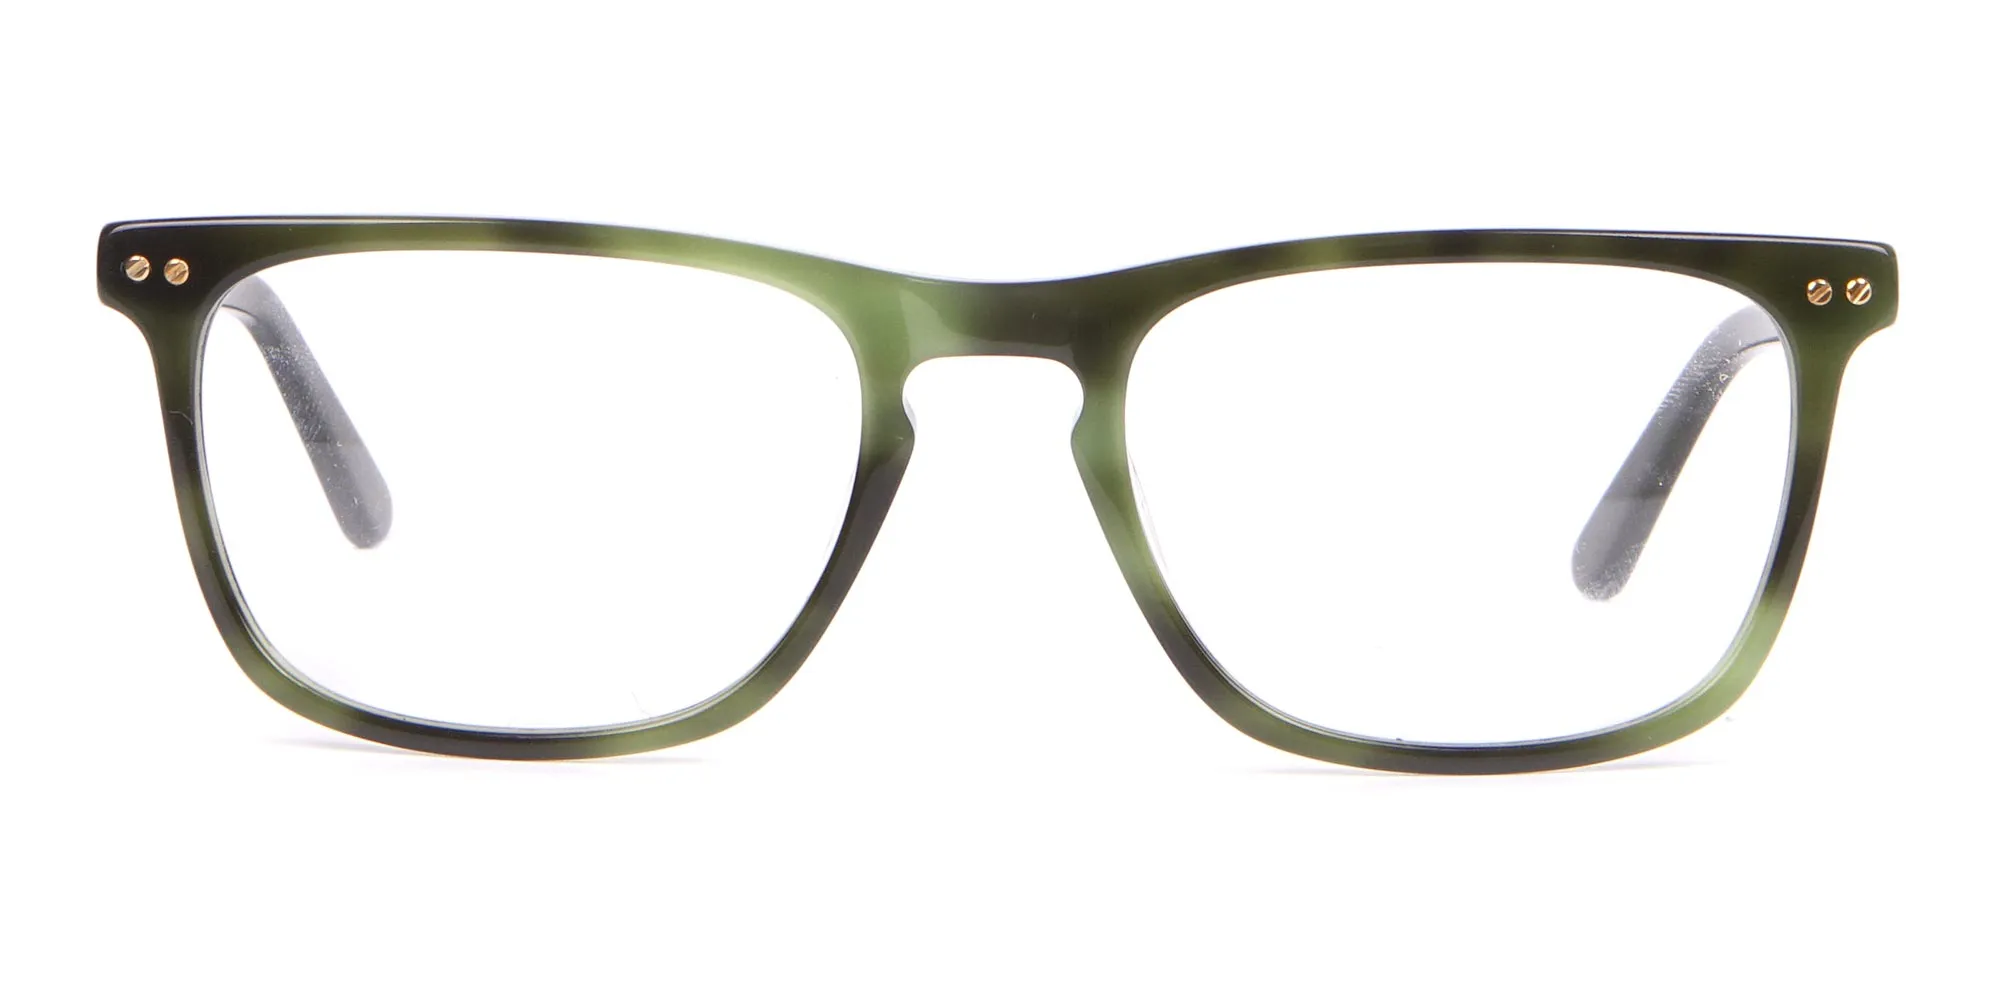 Calvin Klein CK18513 Rectangular Glasses in Green Tortoise-2